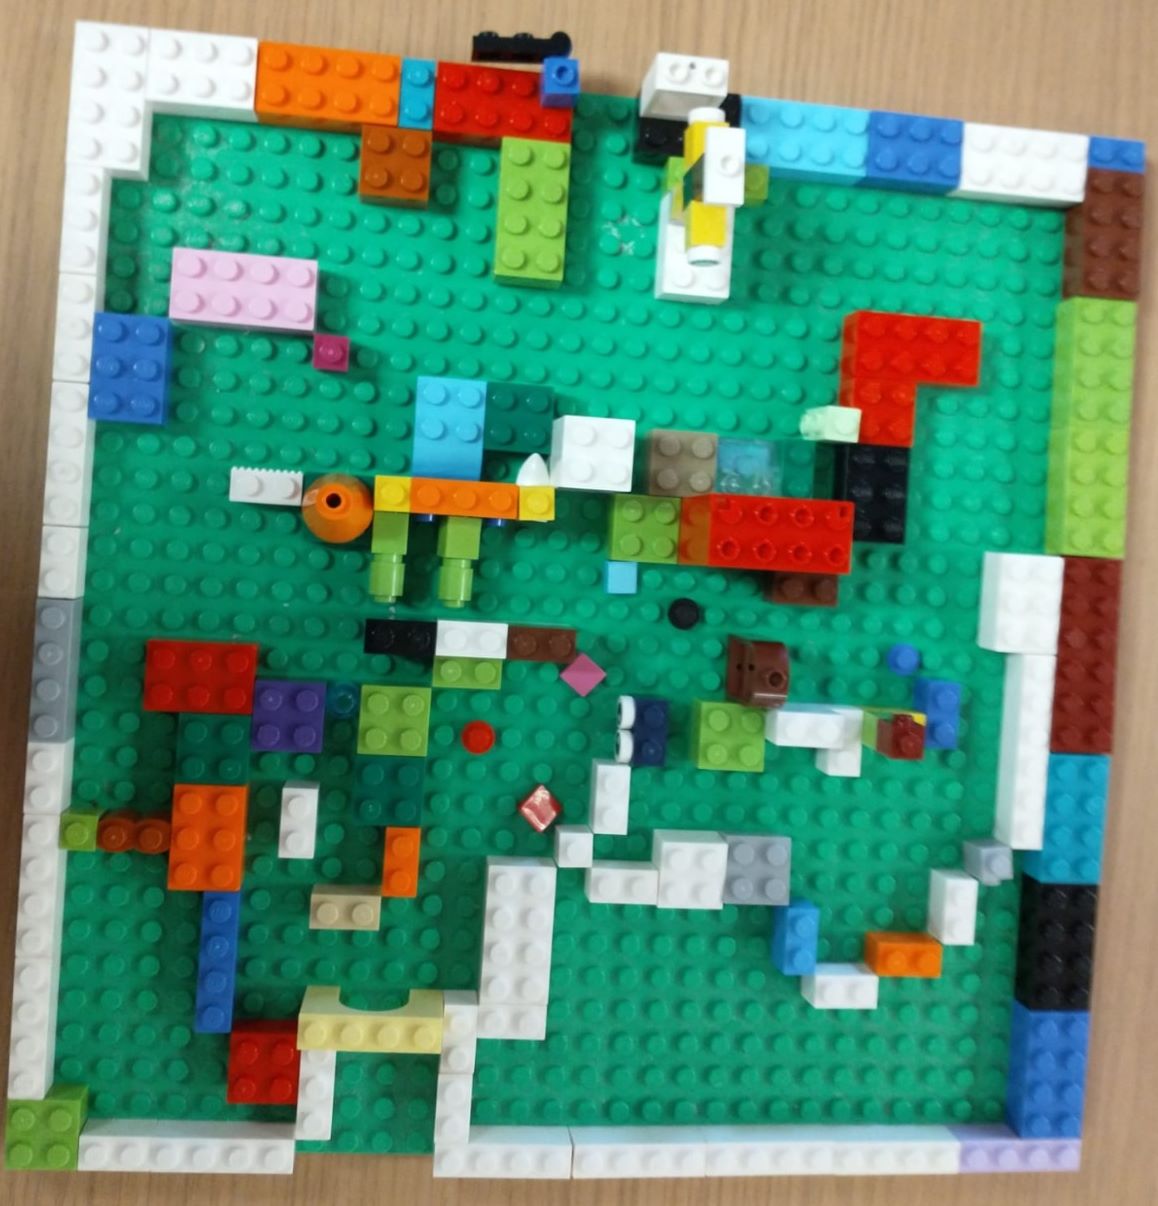 Lego Maze, Marble Run